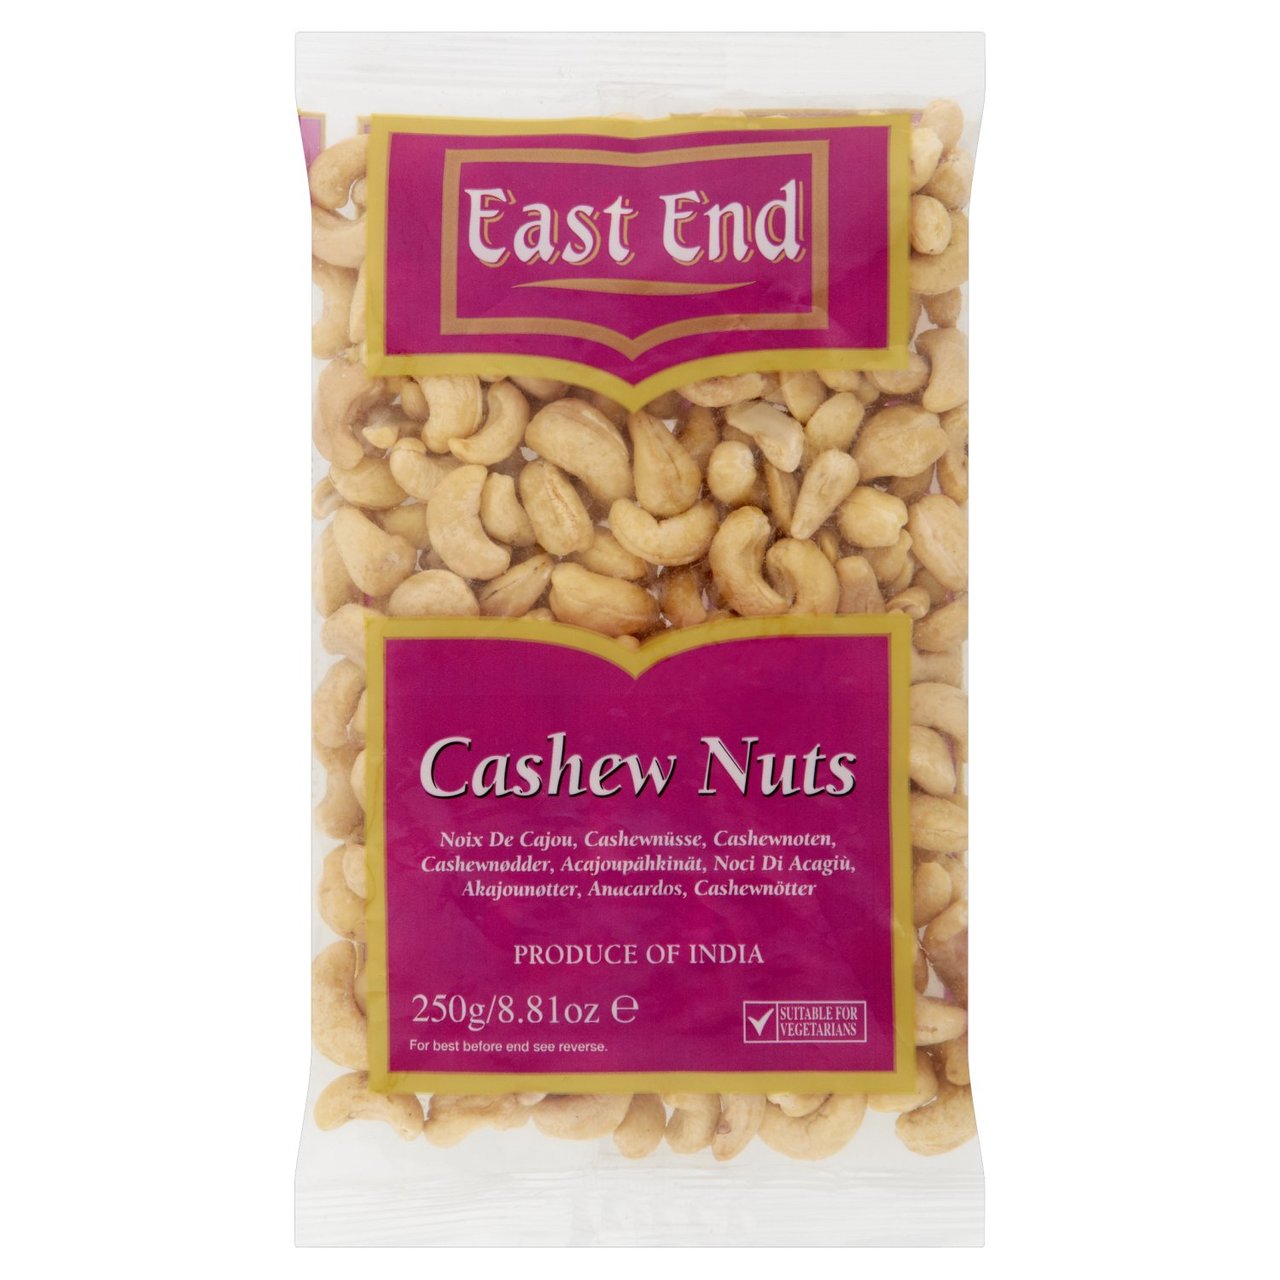 East End Cashew Nuts Kaju Plain 250g